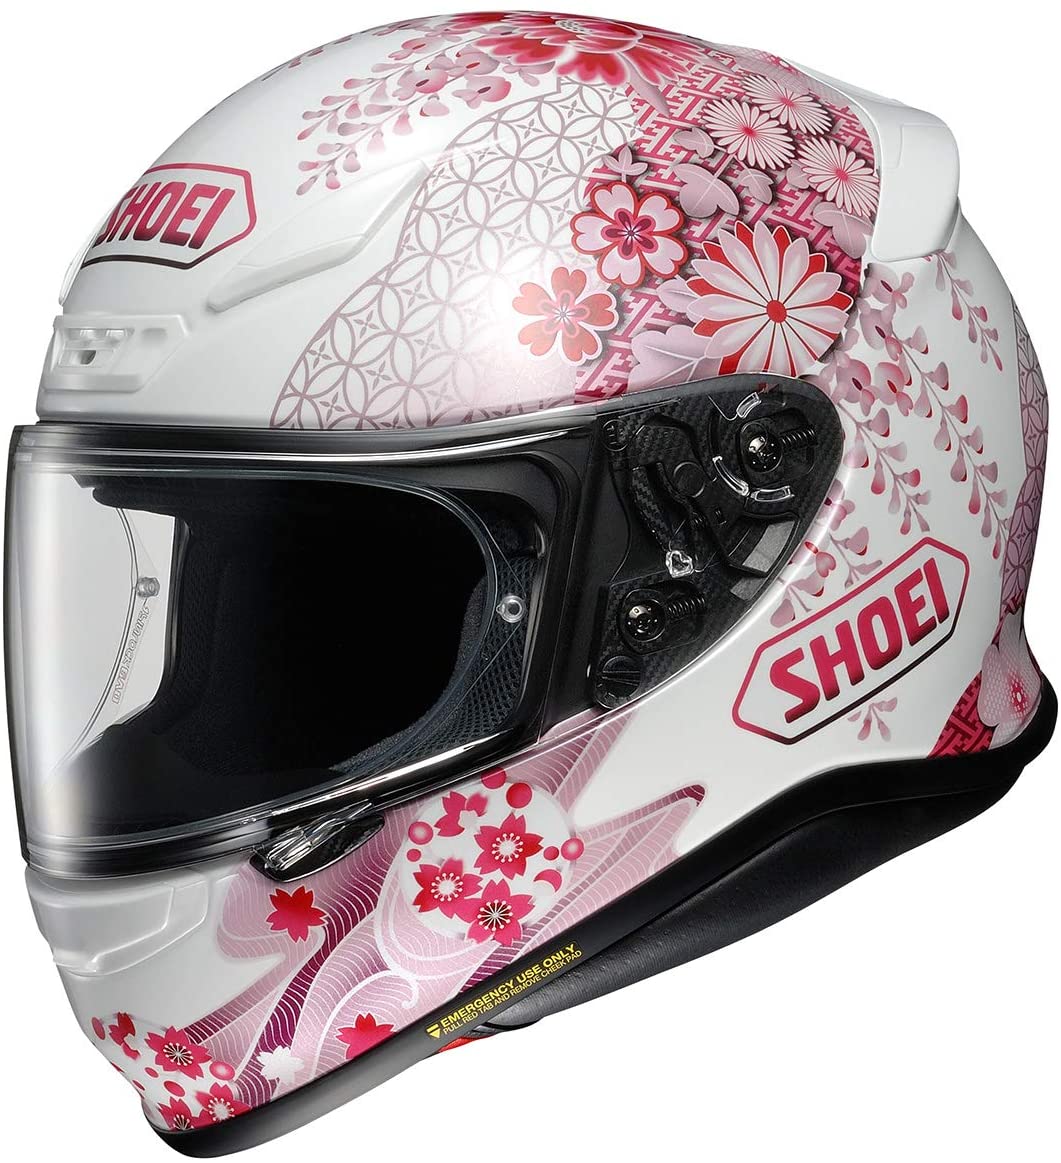 Shoei RF1200 Helmet - Haromonic